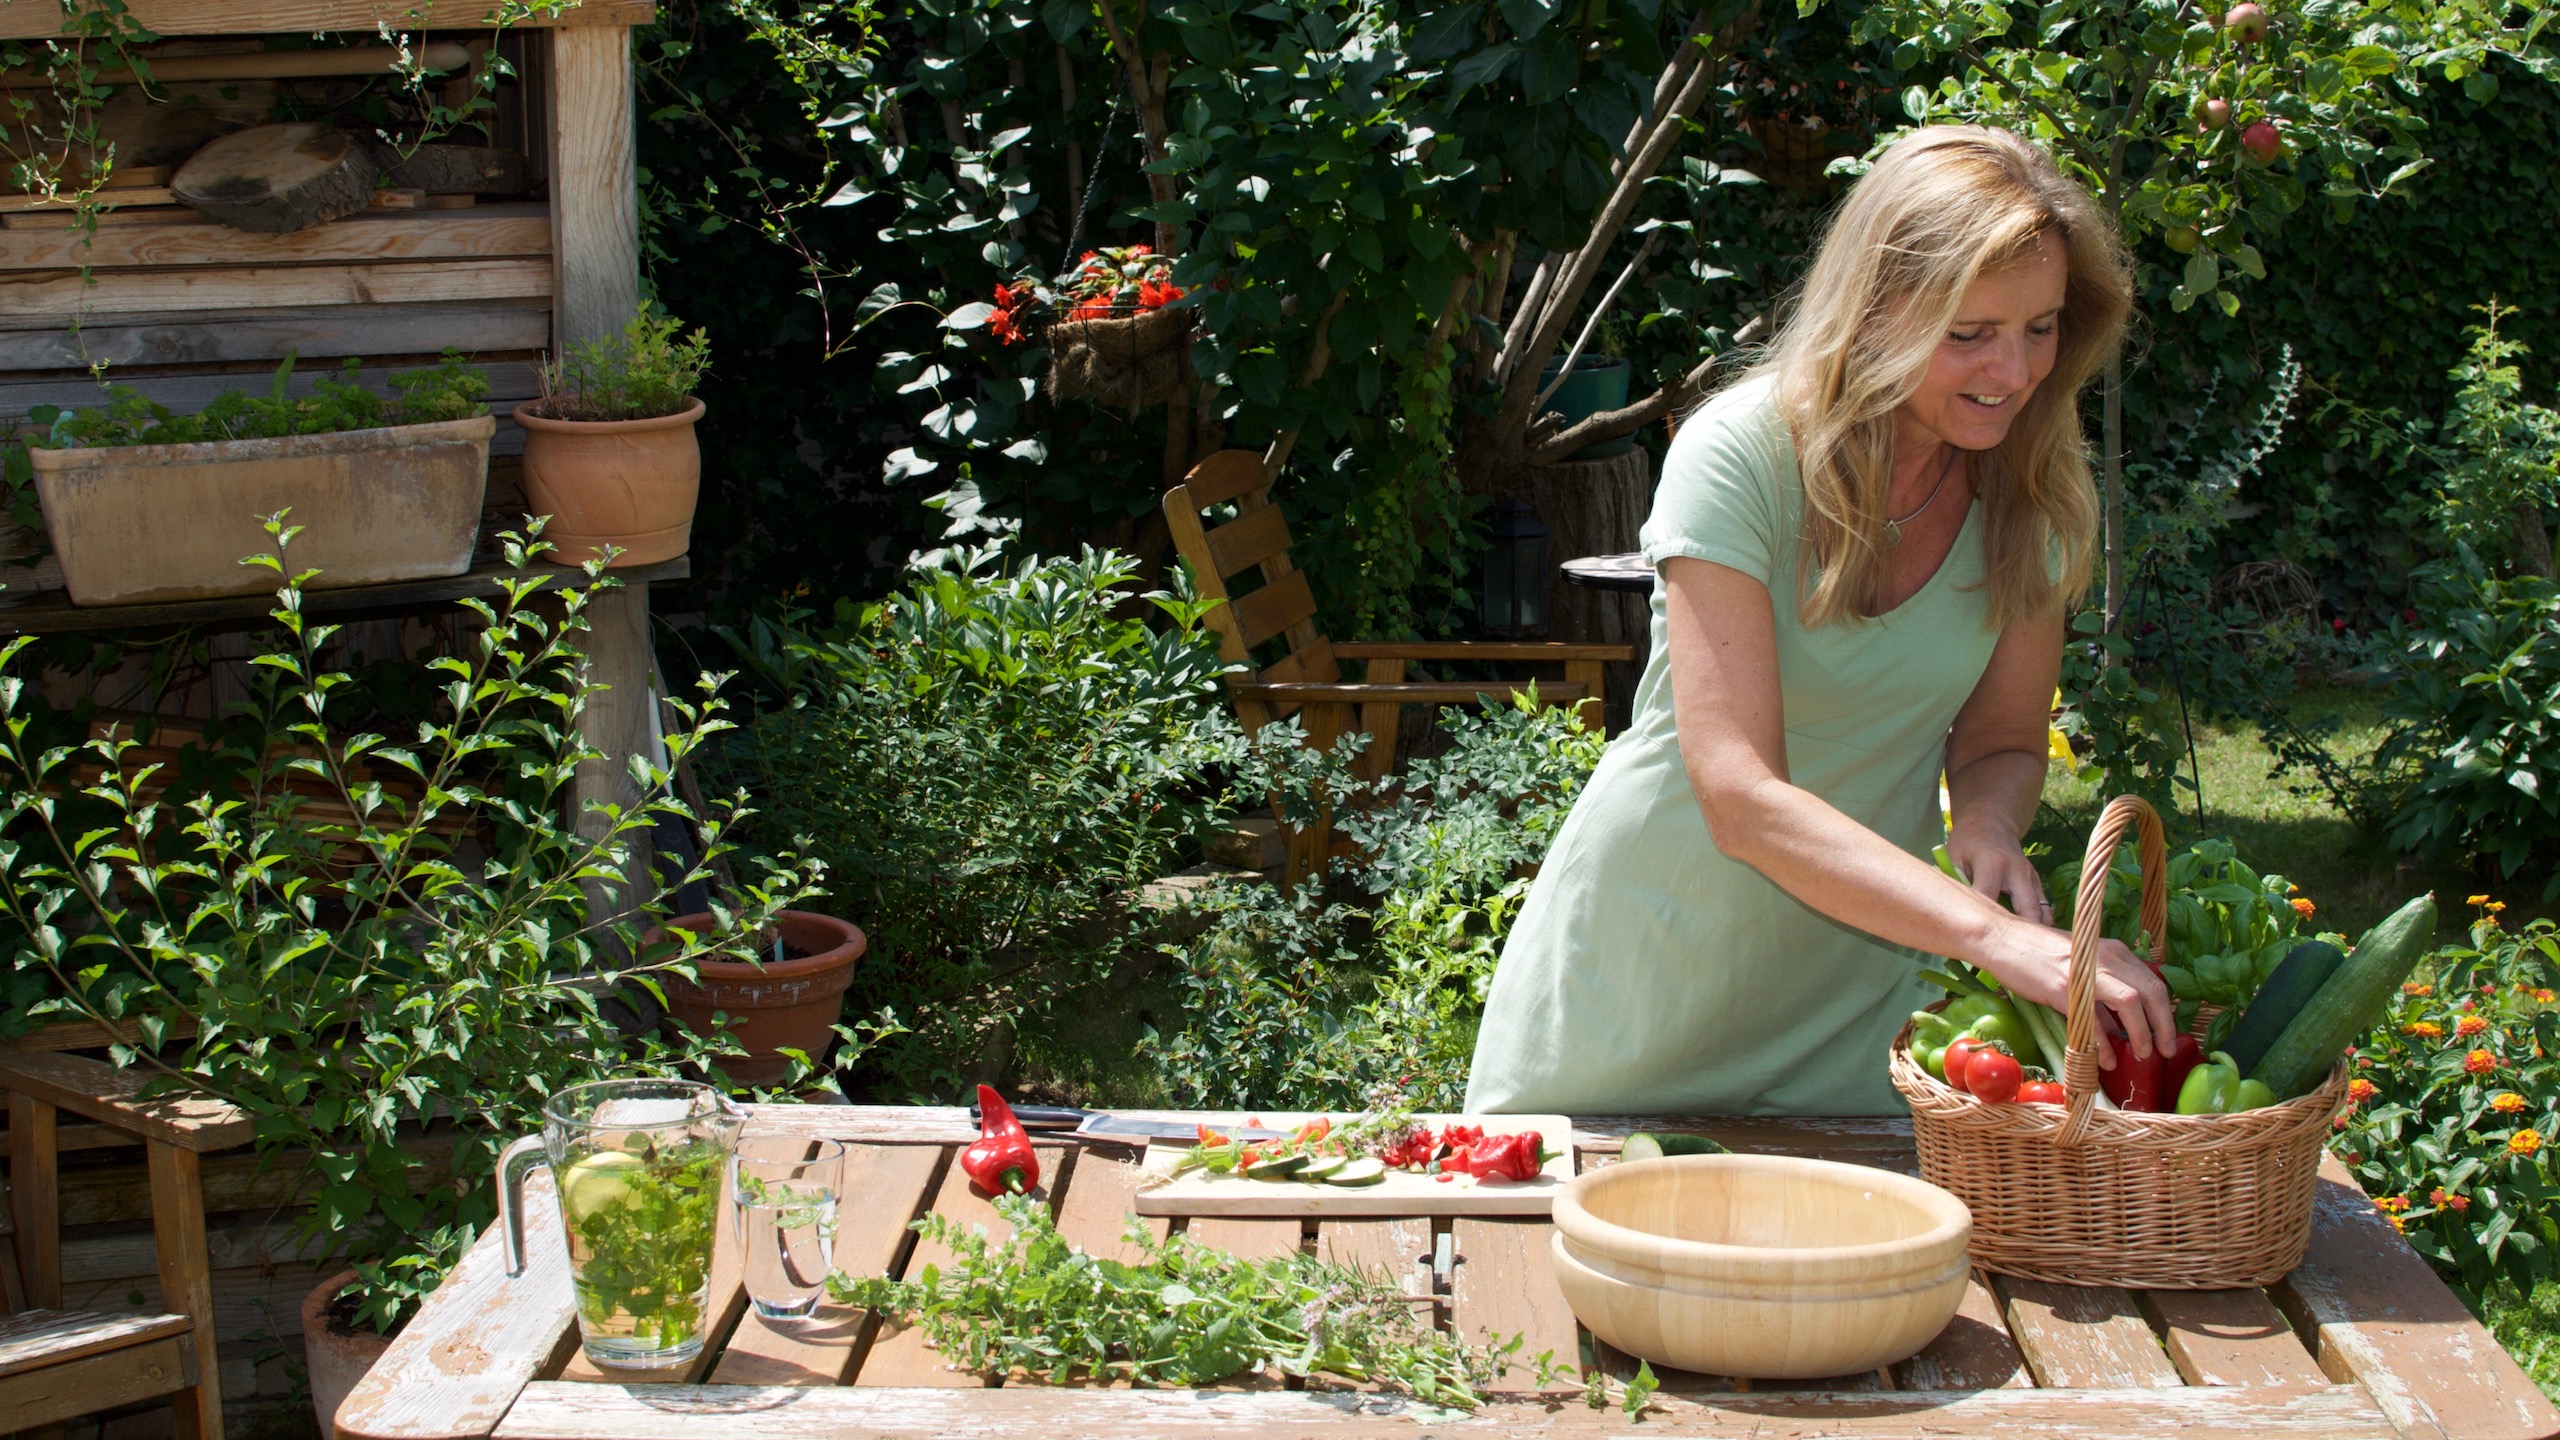 Gaby kocht in ihrem Garten auf einem Holztisch. Sie nimmt gerade etwas aus dem Gemüsekorb.